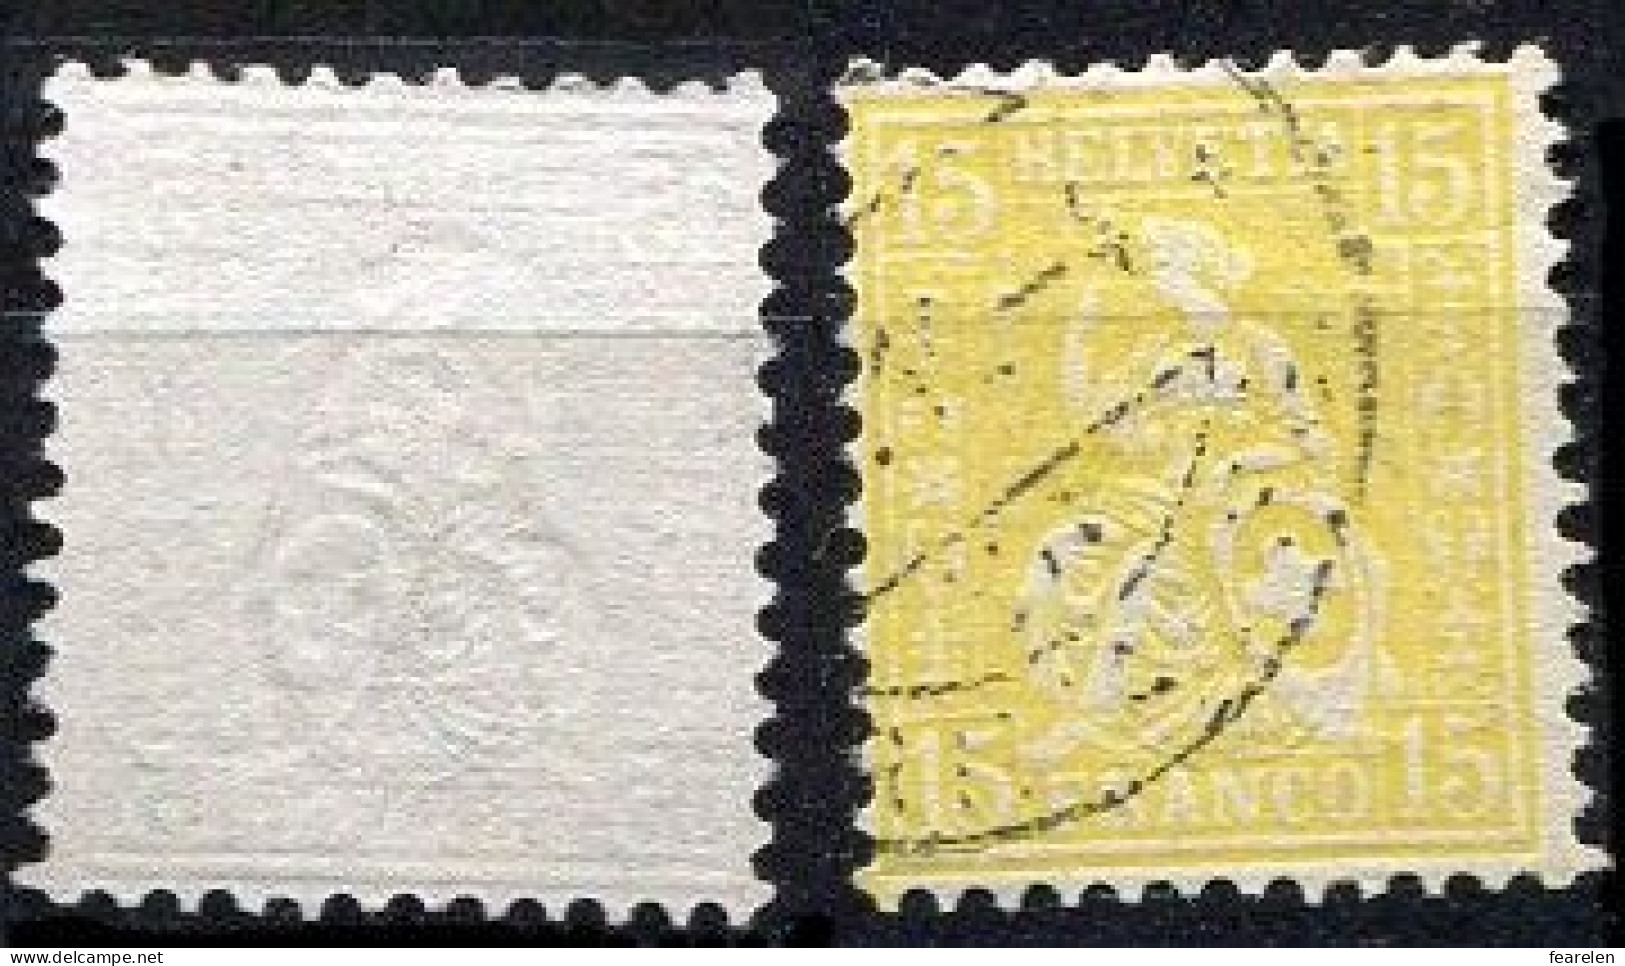 Suisse N°52 Oblitéré, Qualité Très Beau - Used Stamps